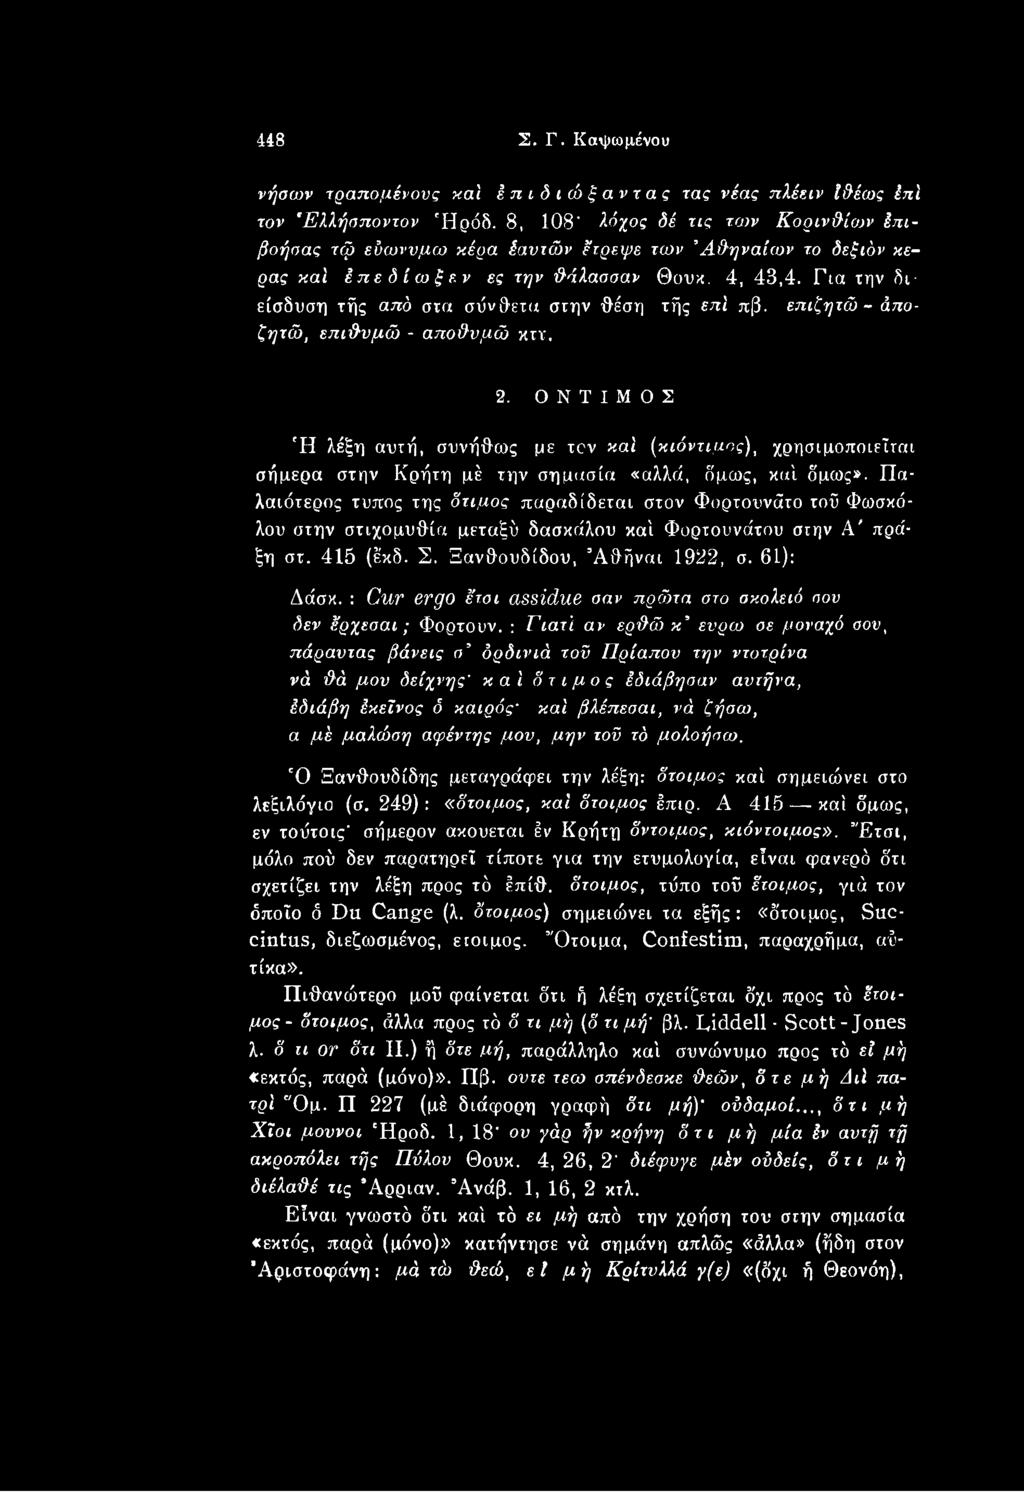 Πα- λαιότερος τύπος της δτιμος παραδίδεται στον Φορτουνάτο τοϋ Φωσκό- λου στην στιχομυθία μεταξύ δασκάλου καί Φορτουνάτου στην Α' πρά- ξη στ. 415 (έκδ. Σ. Ηανθουδίδου, Άθήναι 1922, σ. 61): Δάσκ.